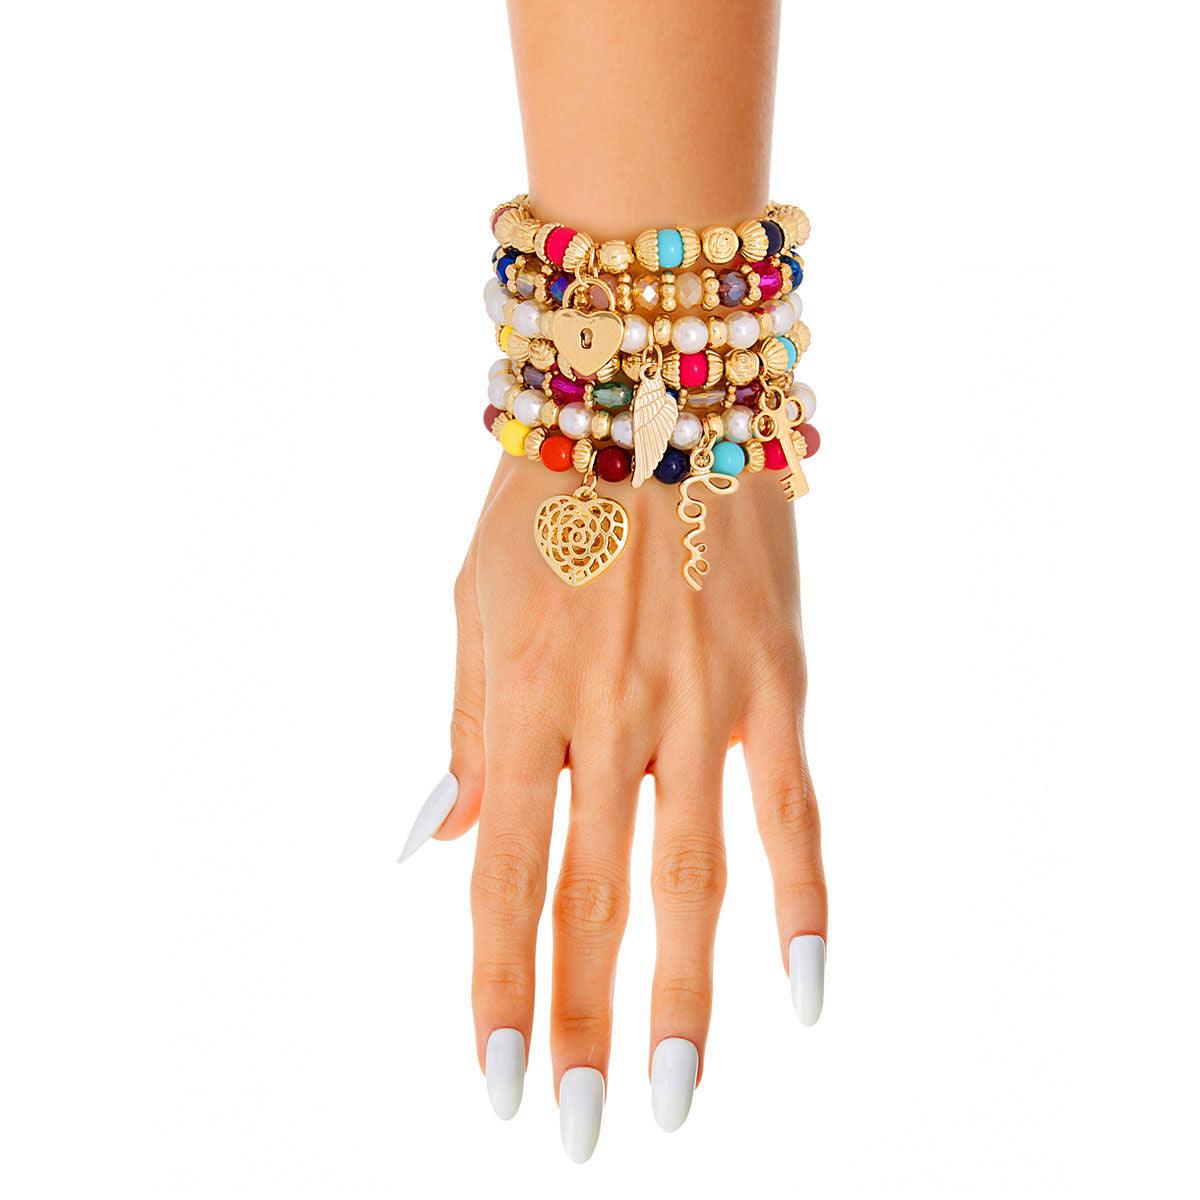 Get the Perfect Fashion Bracelet Set - Multicolor Mix!